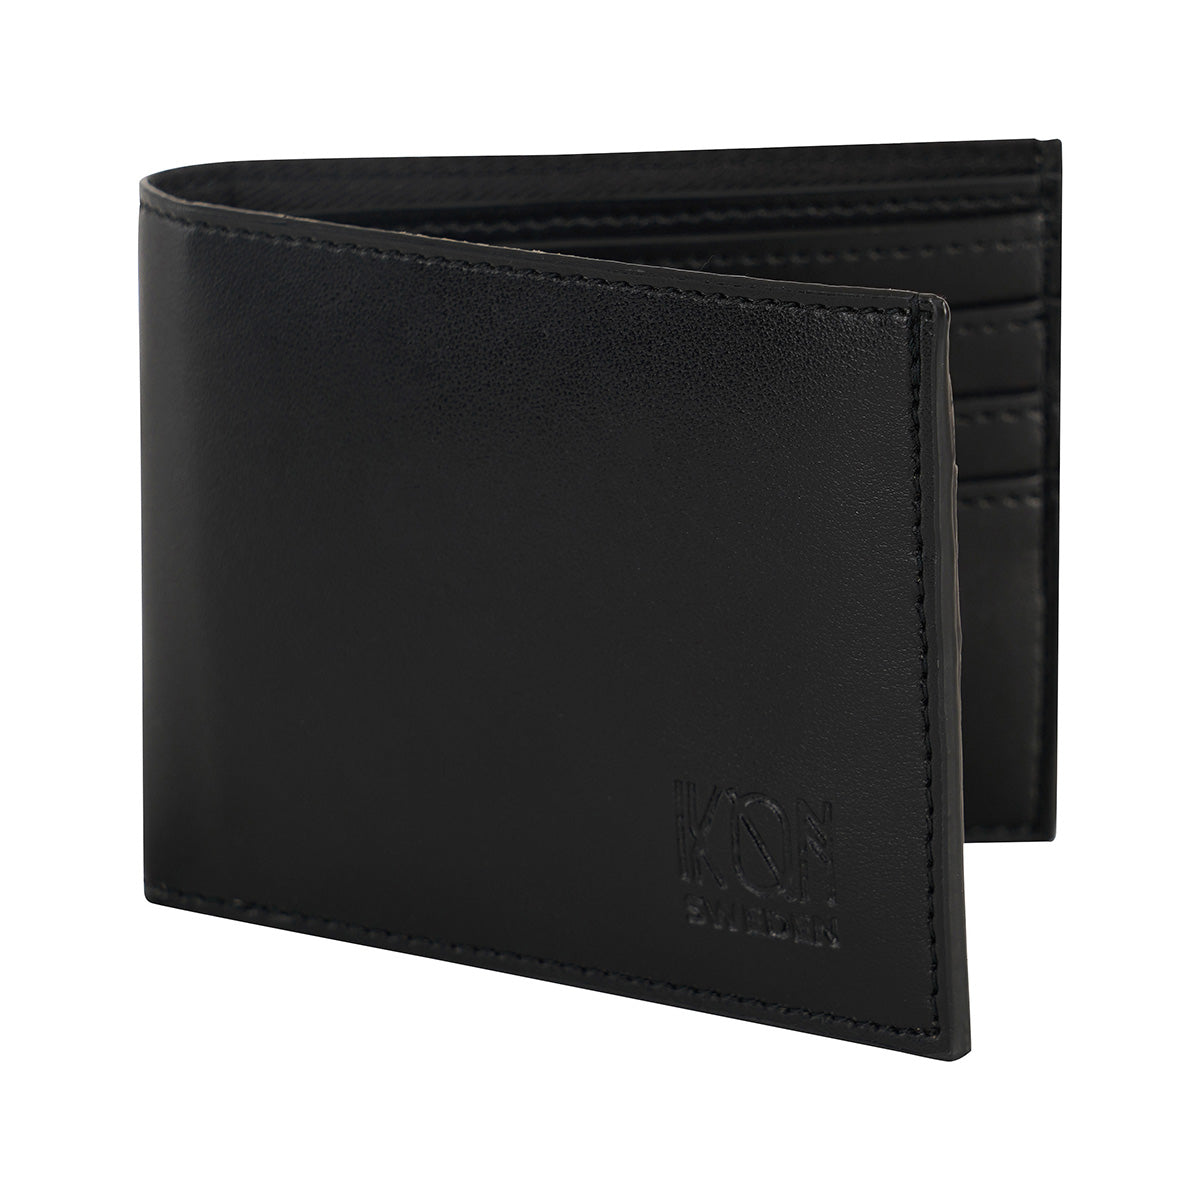 Apple Leather Black wallet for Men